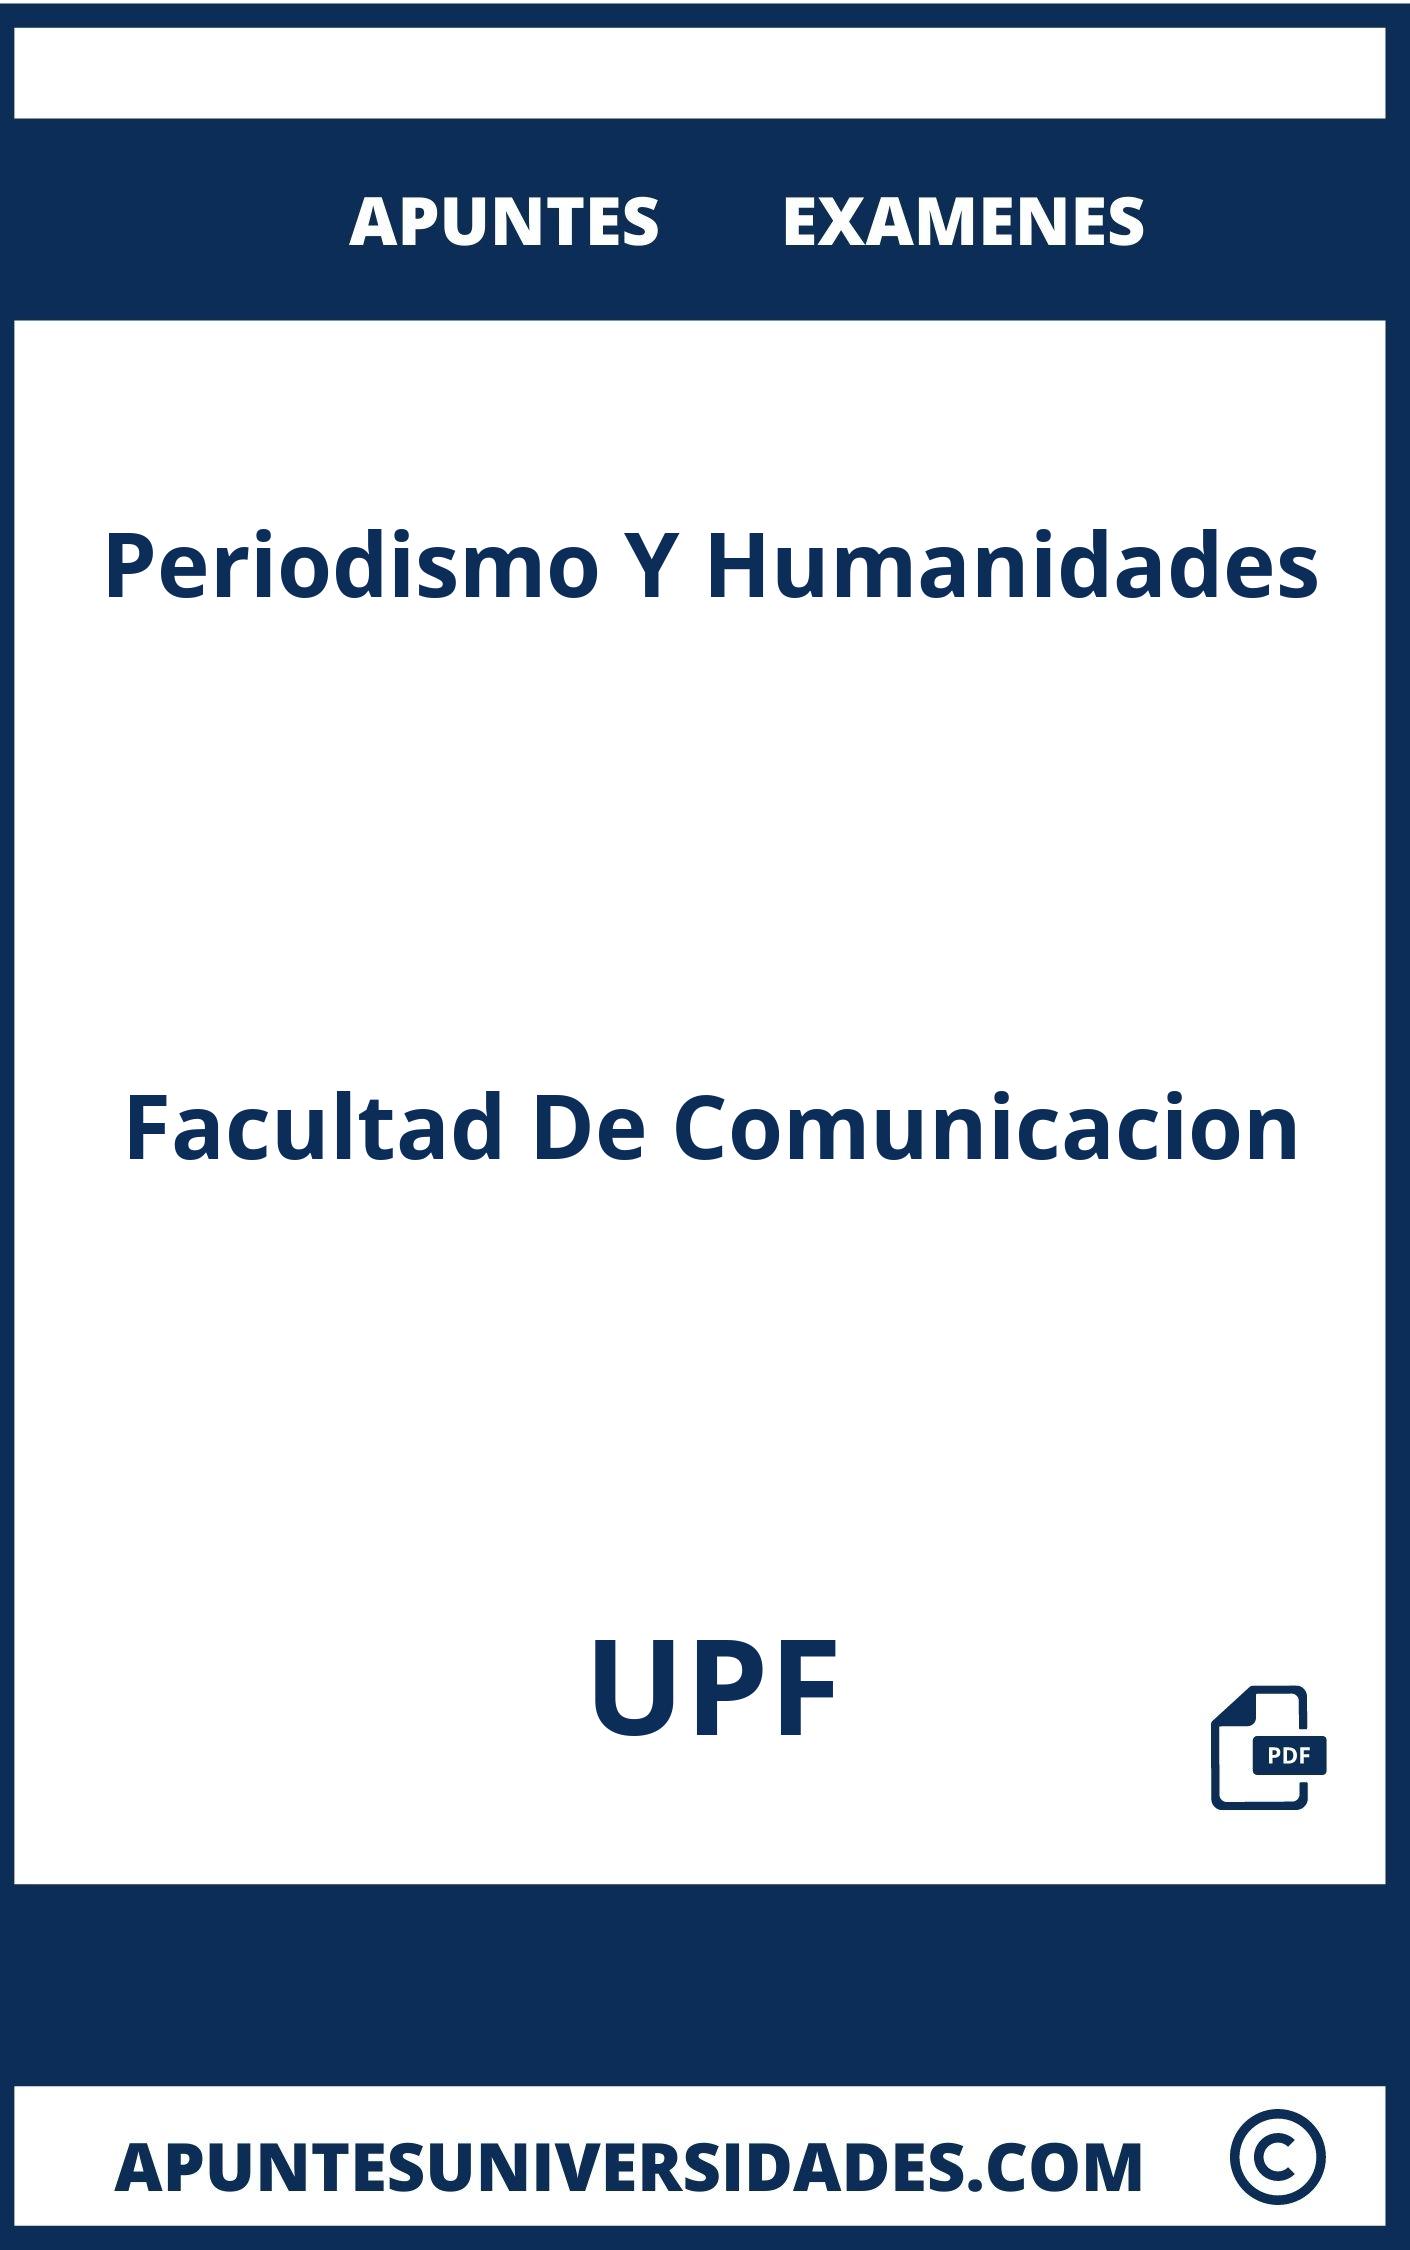 Examenes y Apuntes de Periodismo Y Humanidades UPF